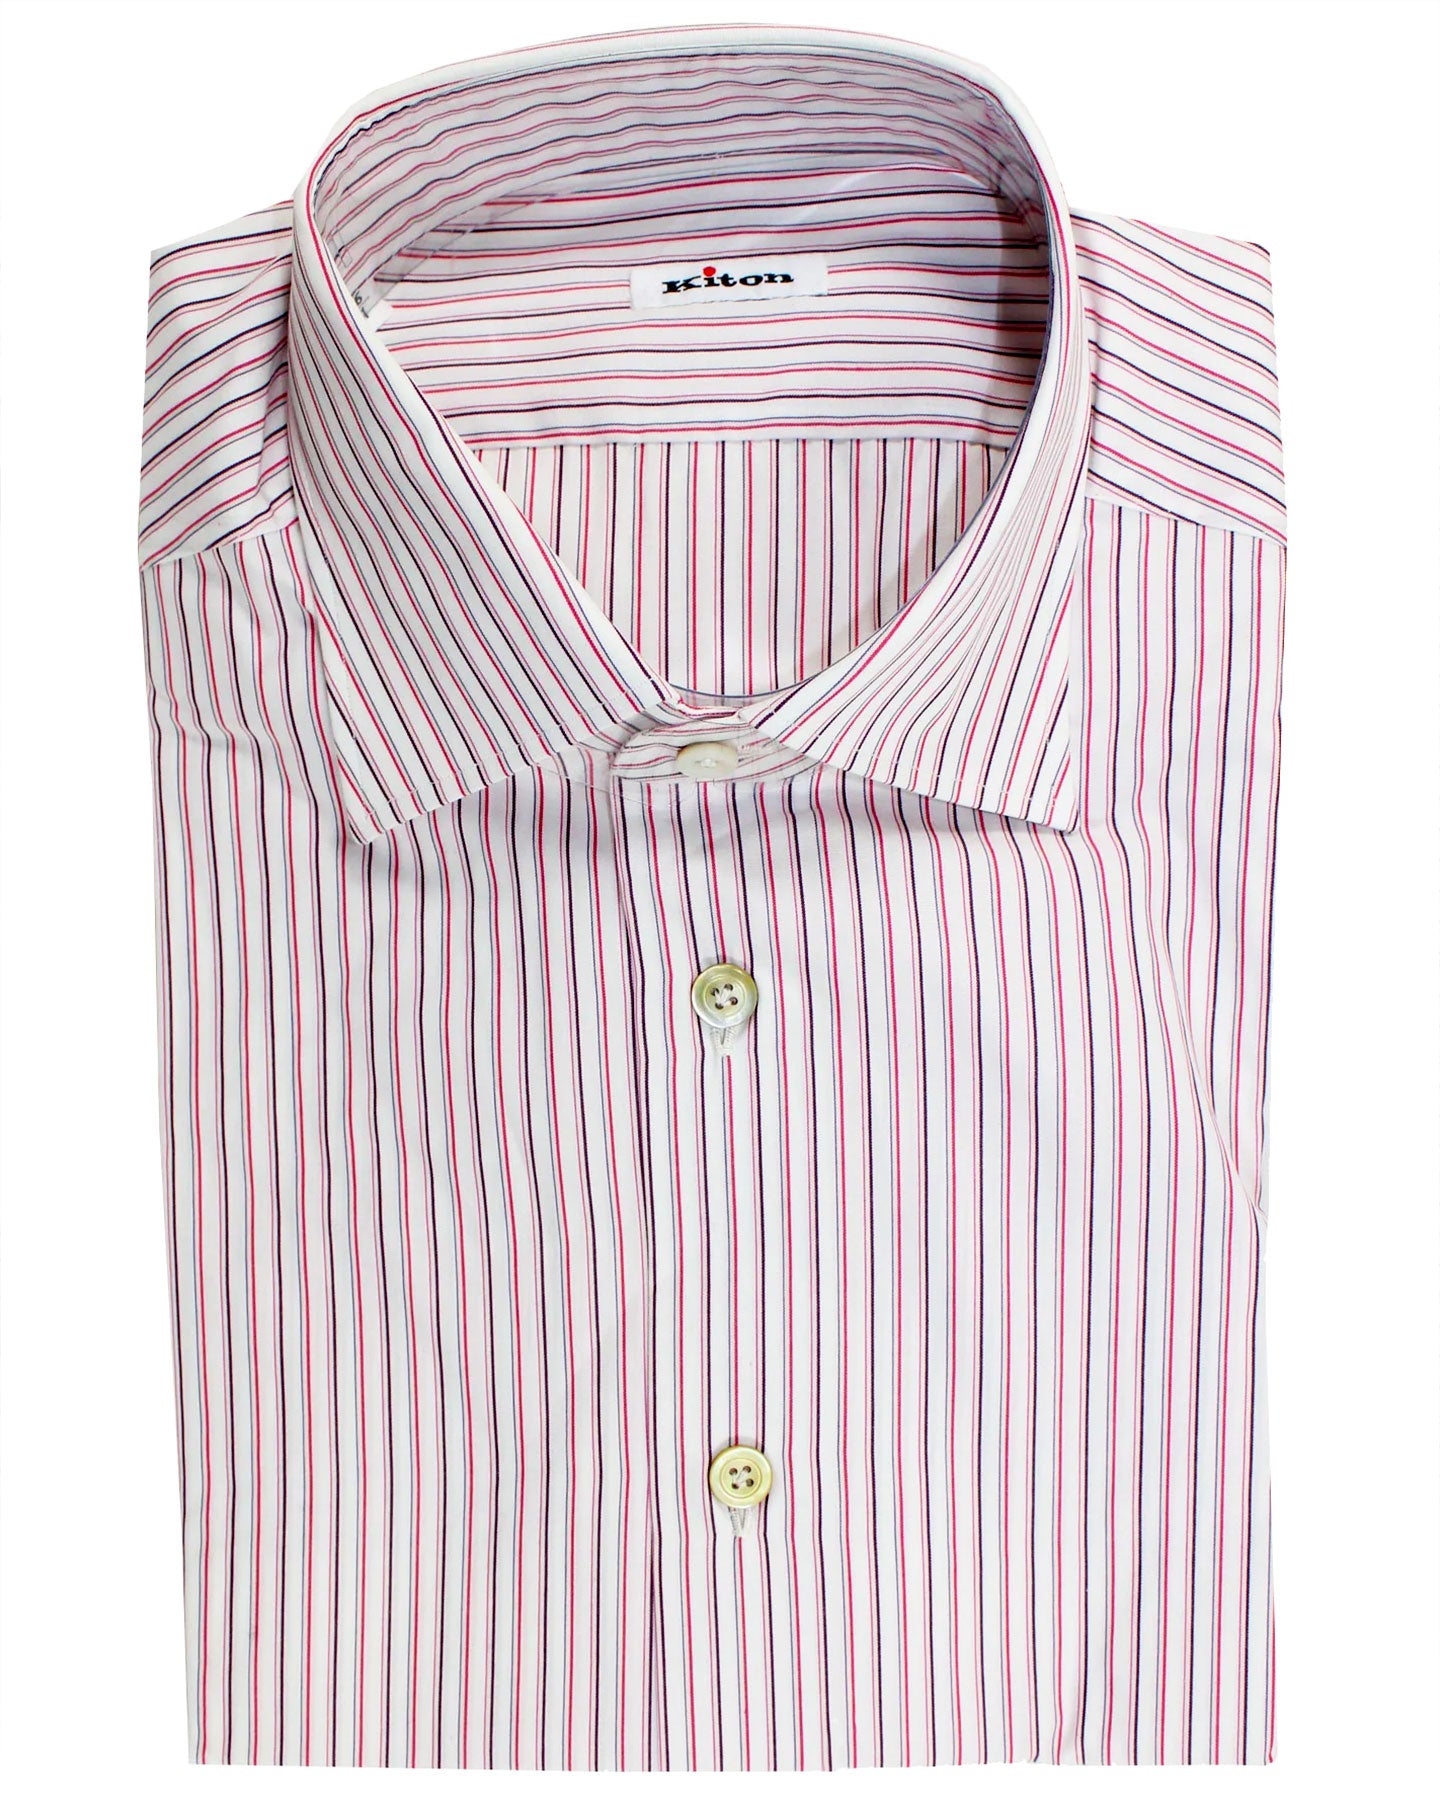 Kiton Dress Shirt White Pink Purple Stripes 42 - 16 1/2 SALE